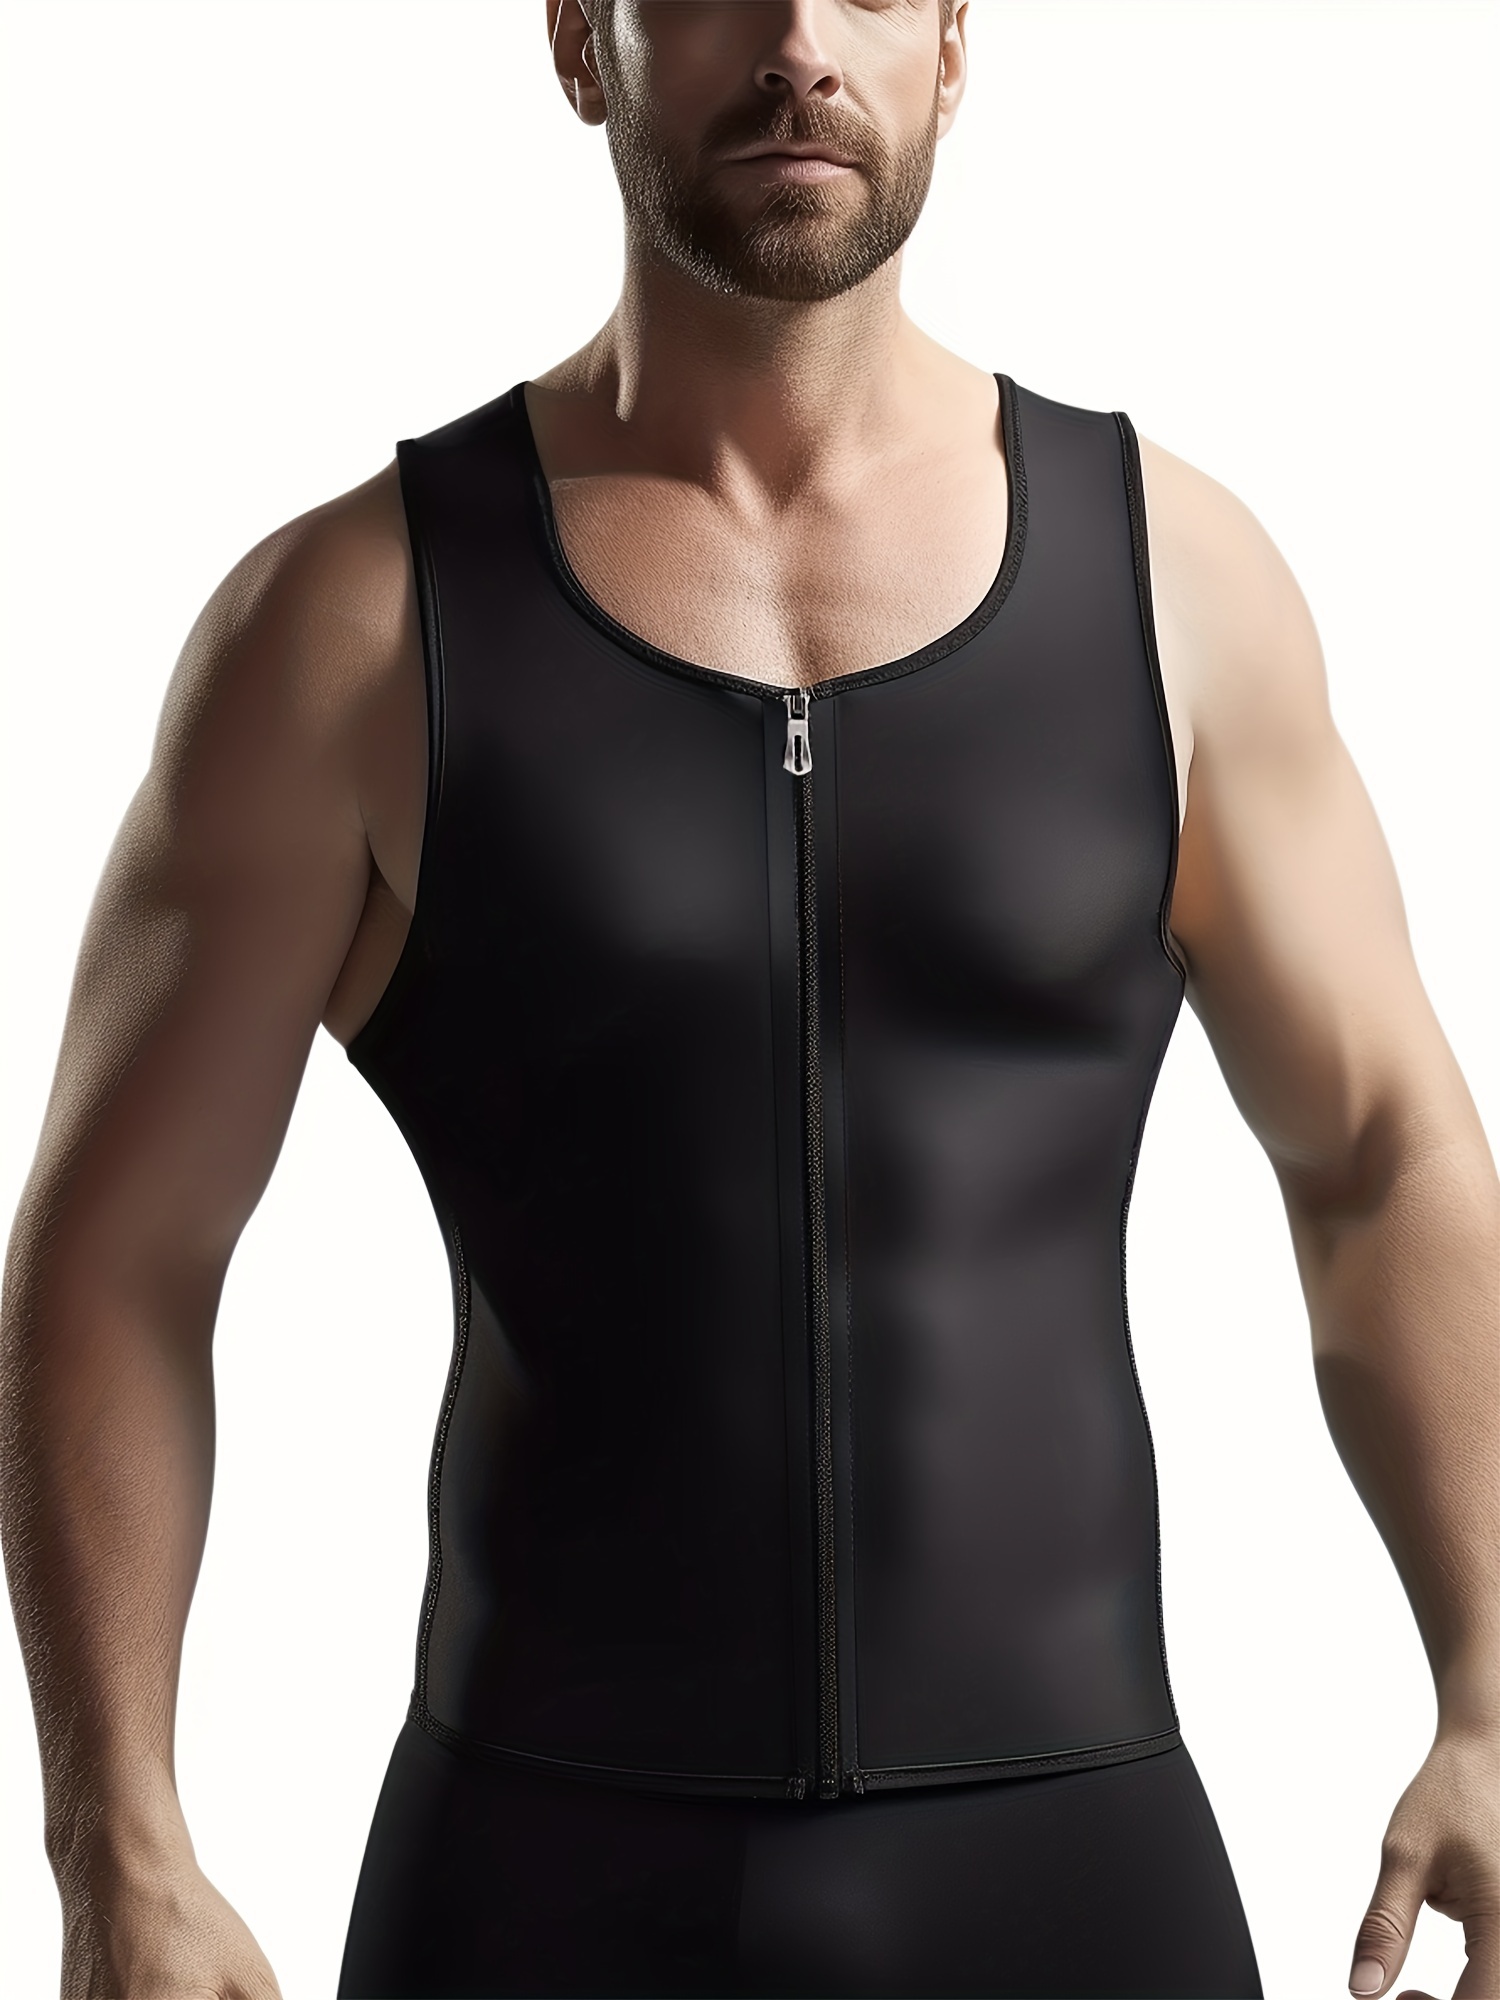 Men's Body Shaper Vest – Physique Perfect